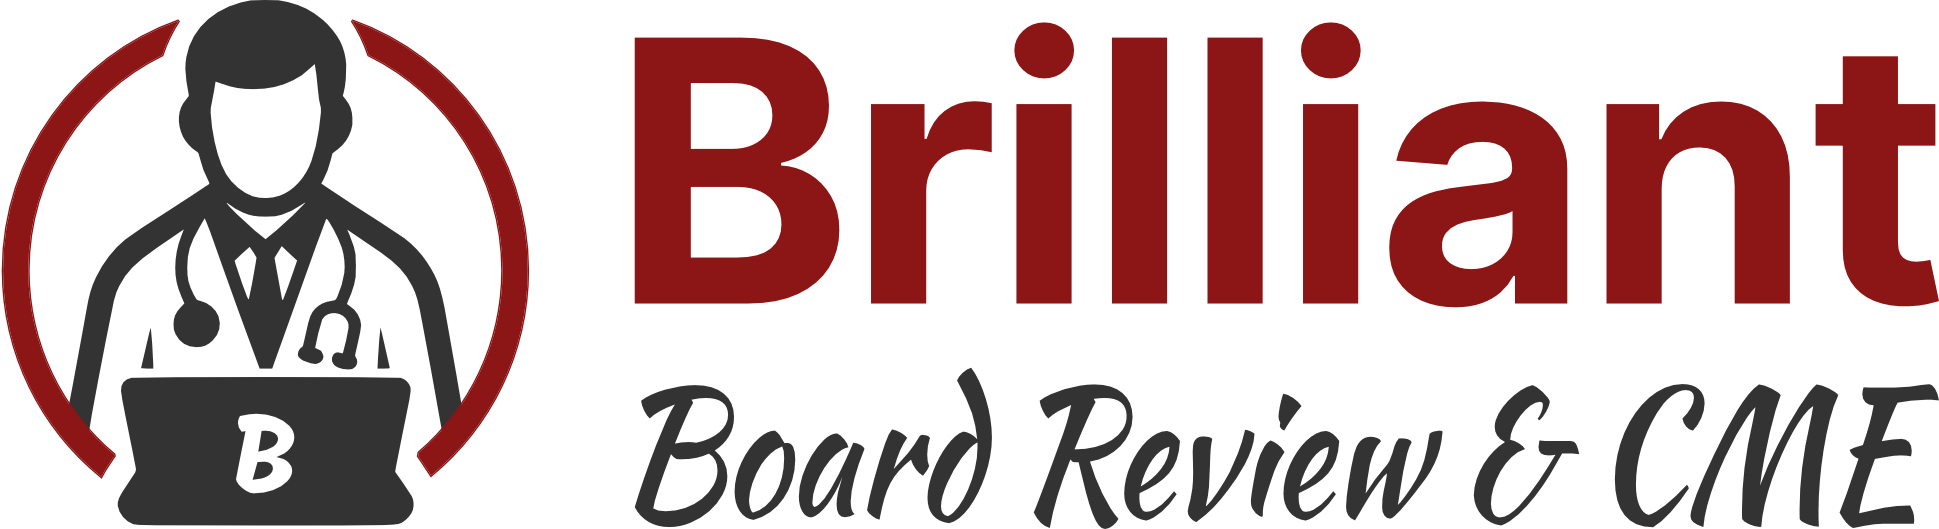 Brilliant Board Review & CME